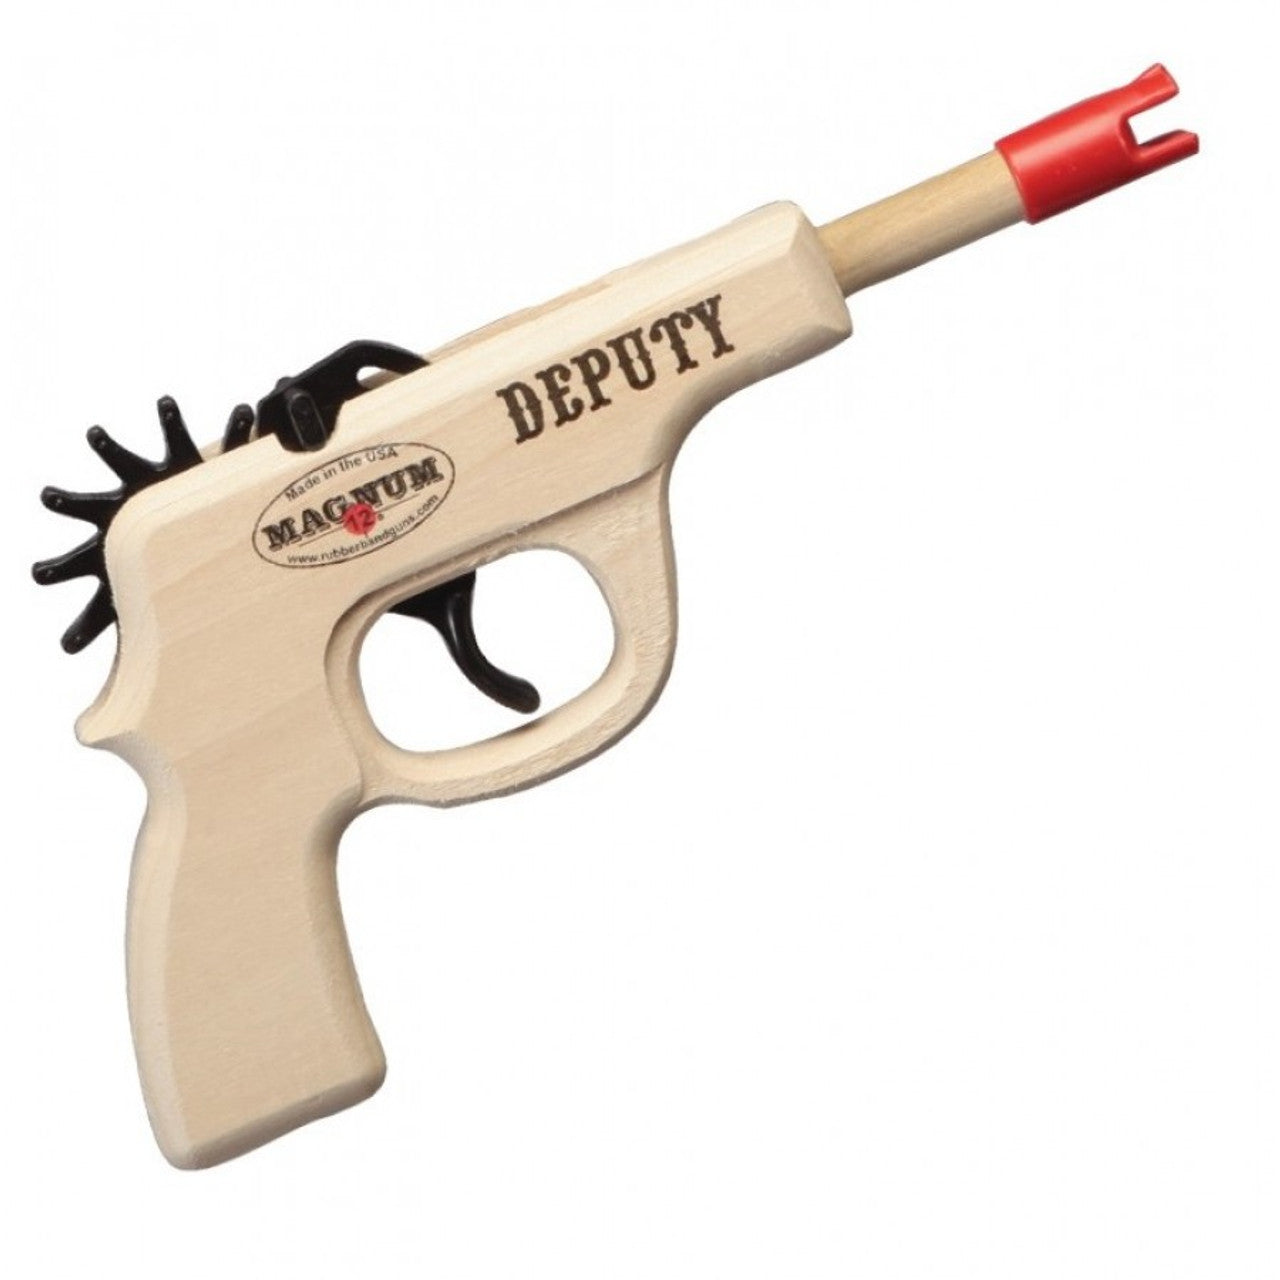 Magnum Deputy Pistol Rubber Band Gun